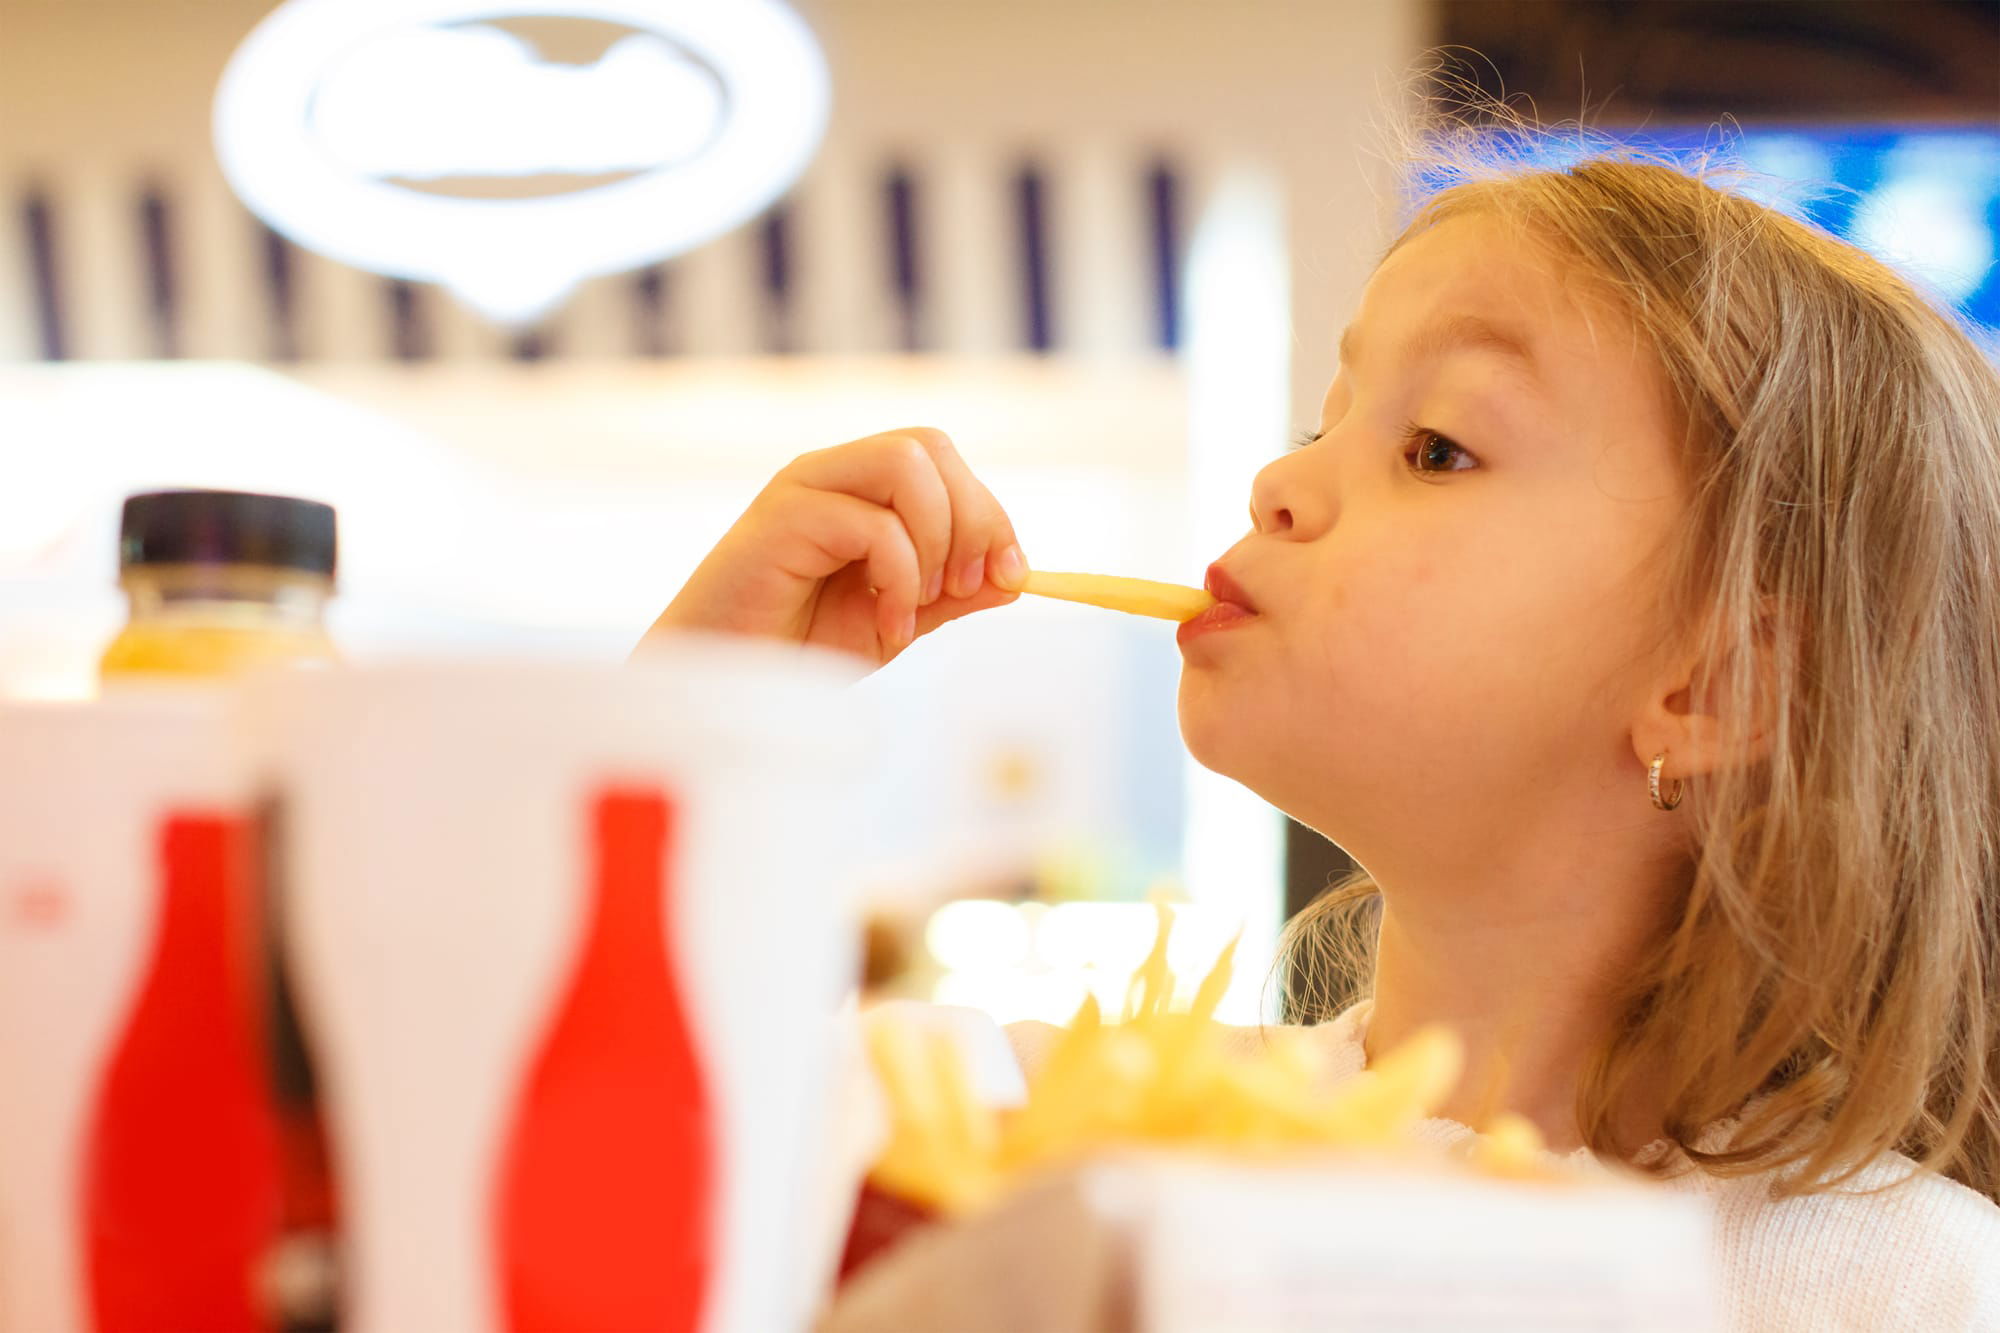 كيف تعد أطفالك لمواجهة إغراءات إعلانات الأطعمة غير الصحية؟